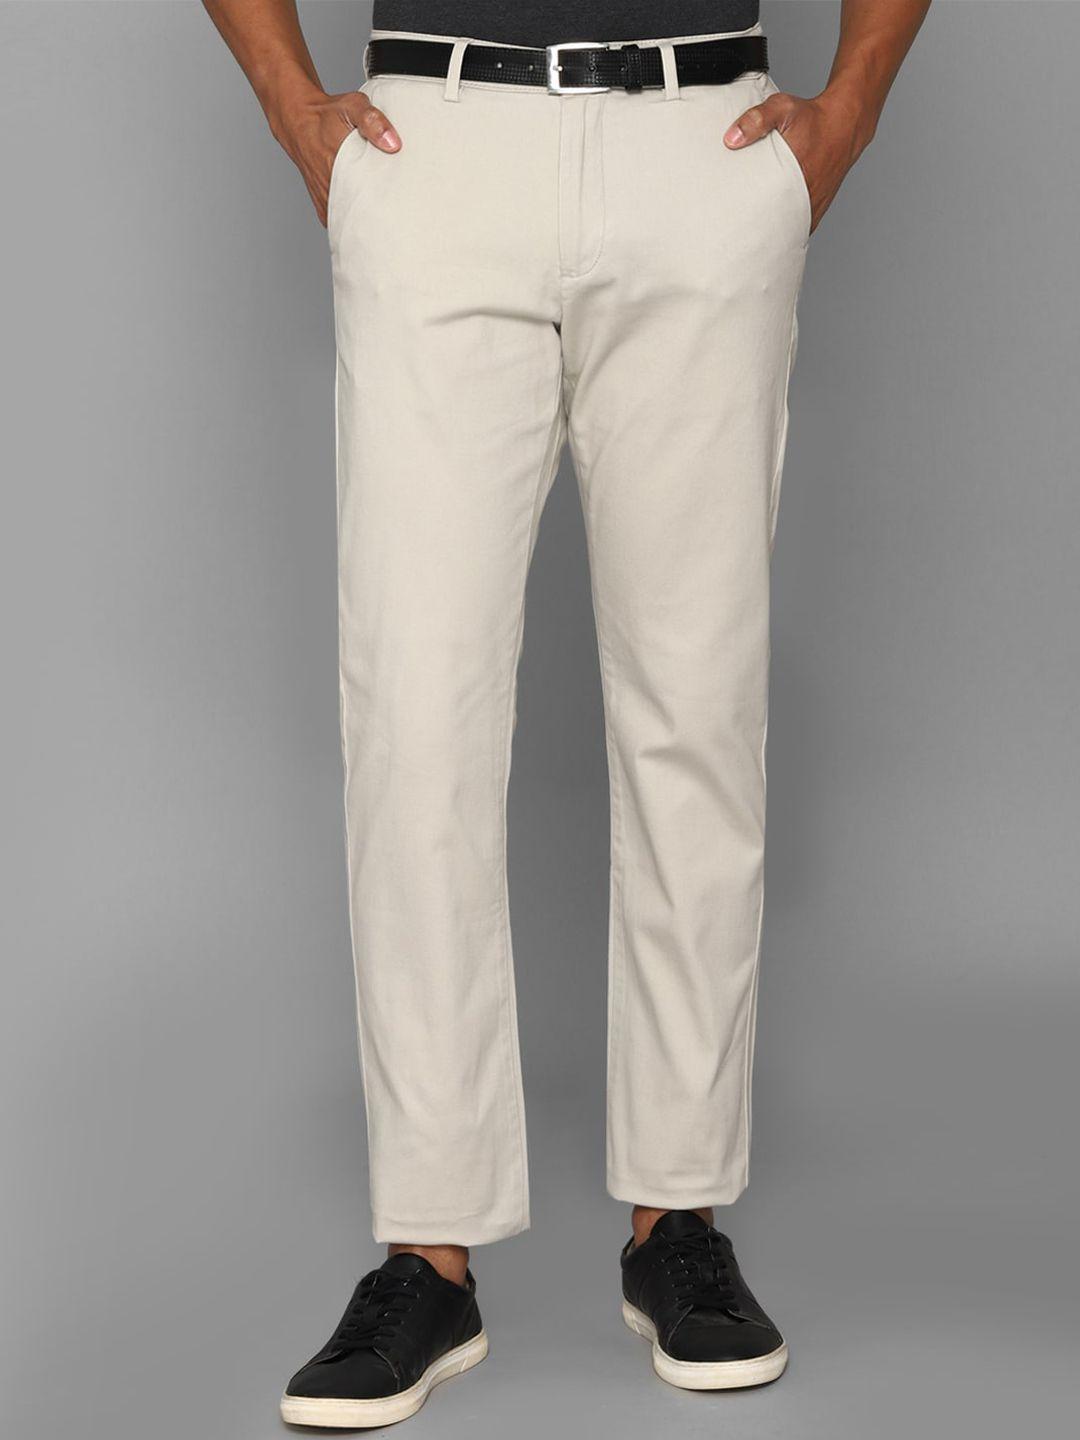 allen-solly-men-mid-rise-plain-trousers